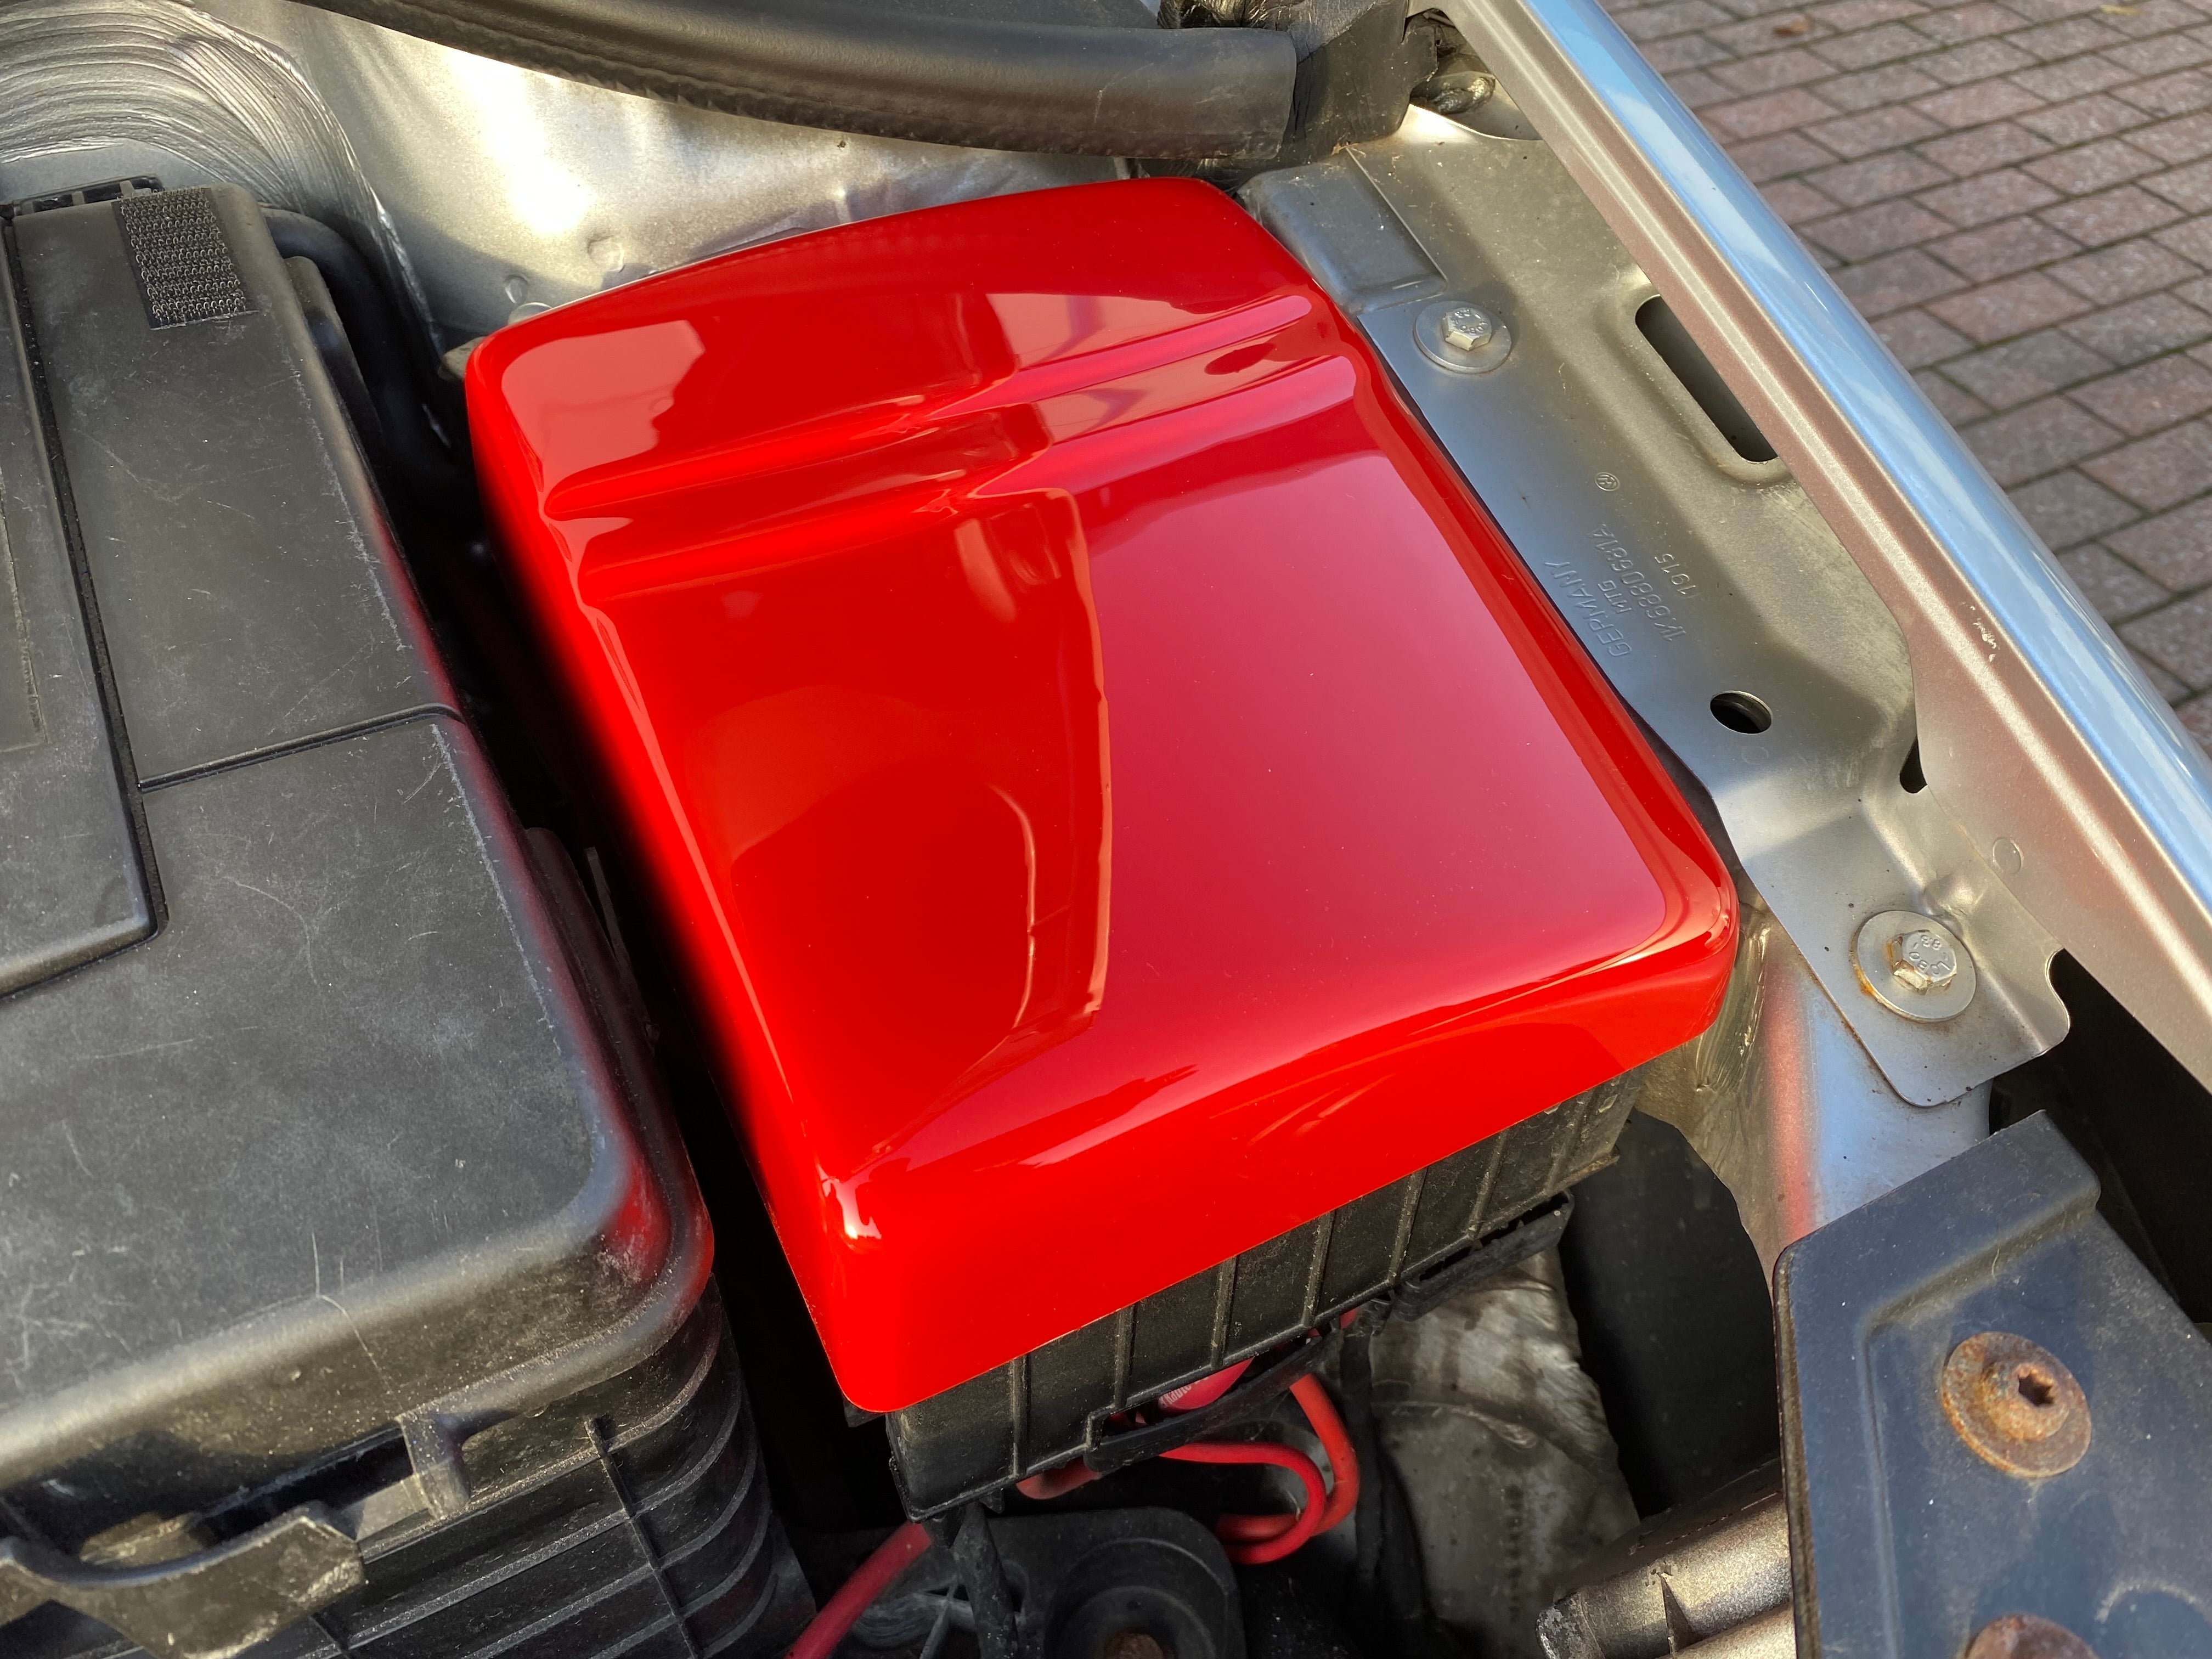 Proform Fuse Box Cover - Seat Leon (Plastic Finishes)